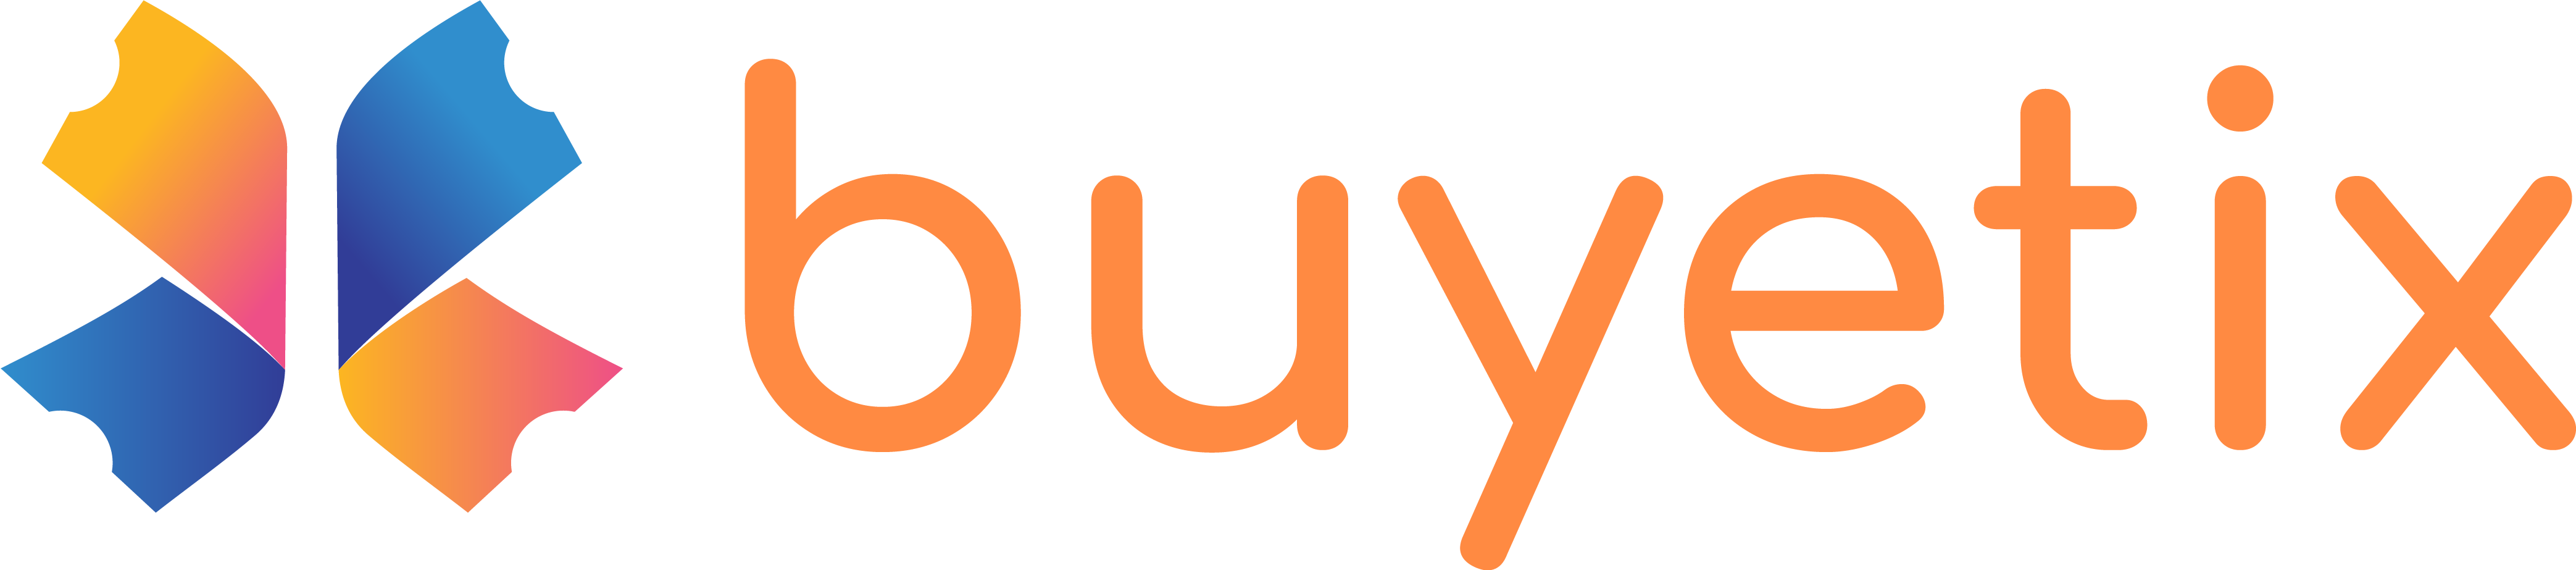 Buyetix-logo